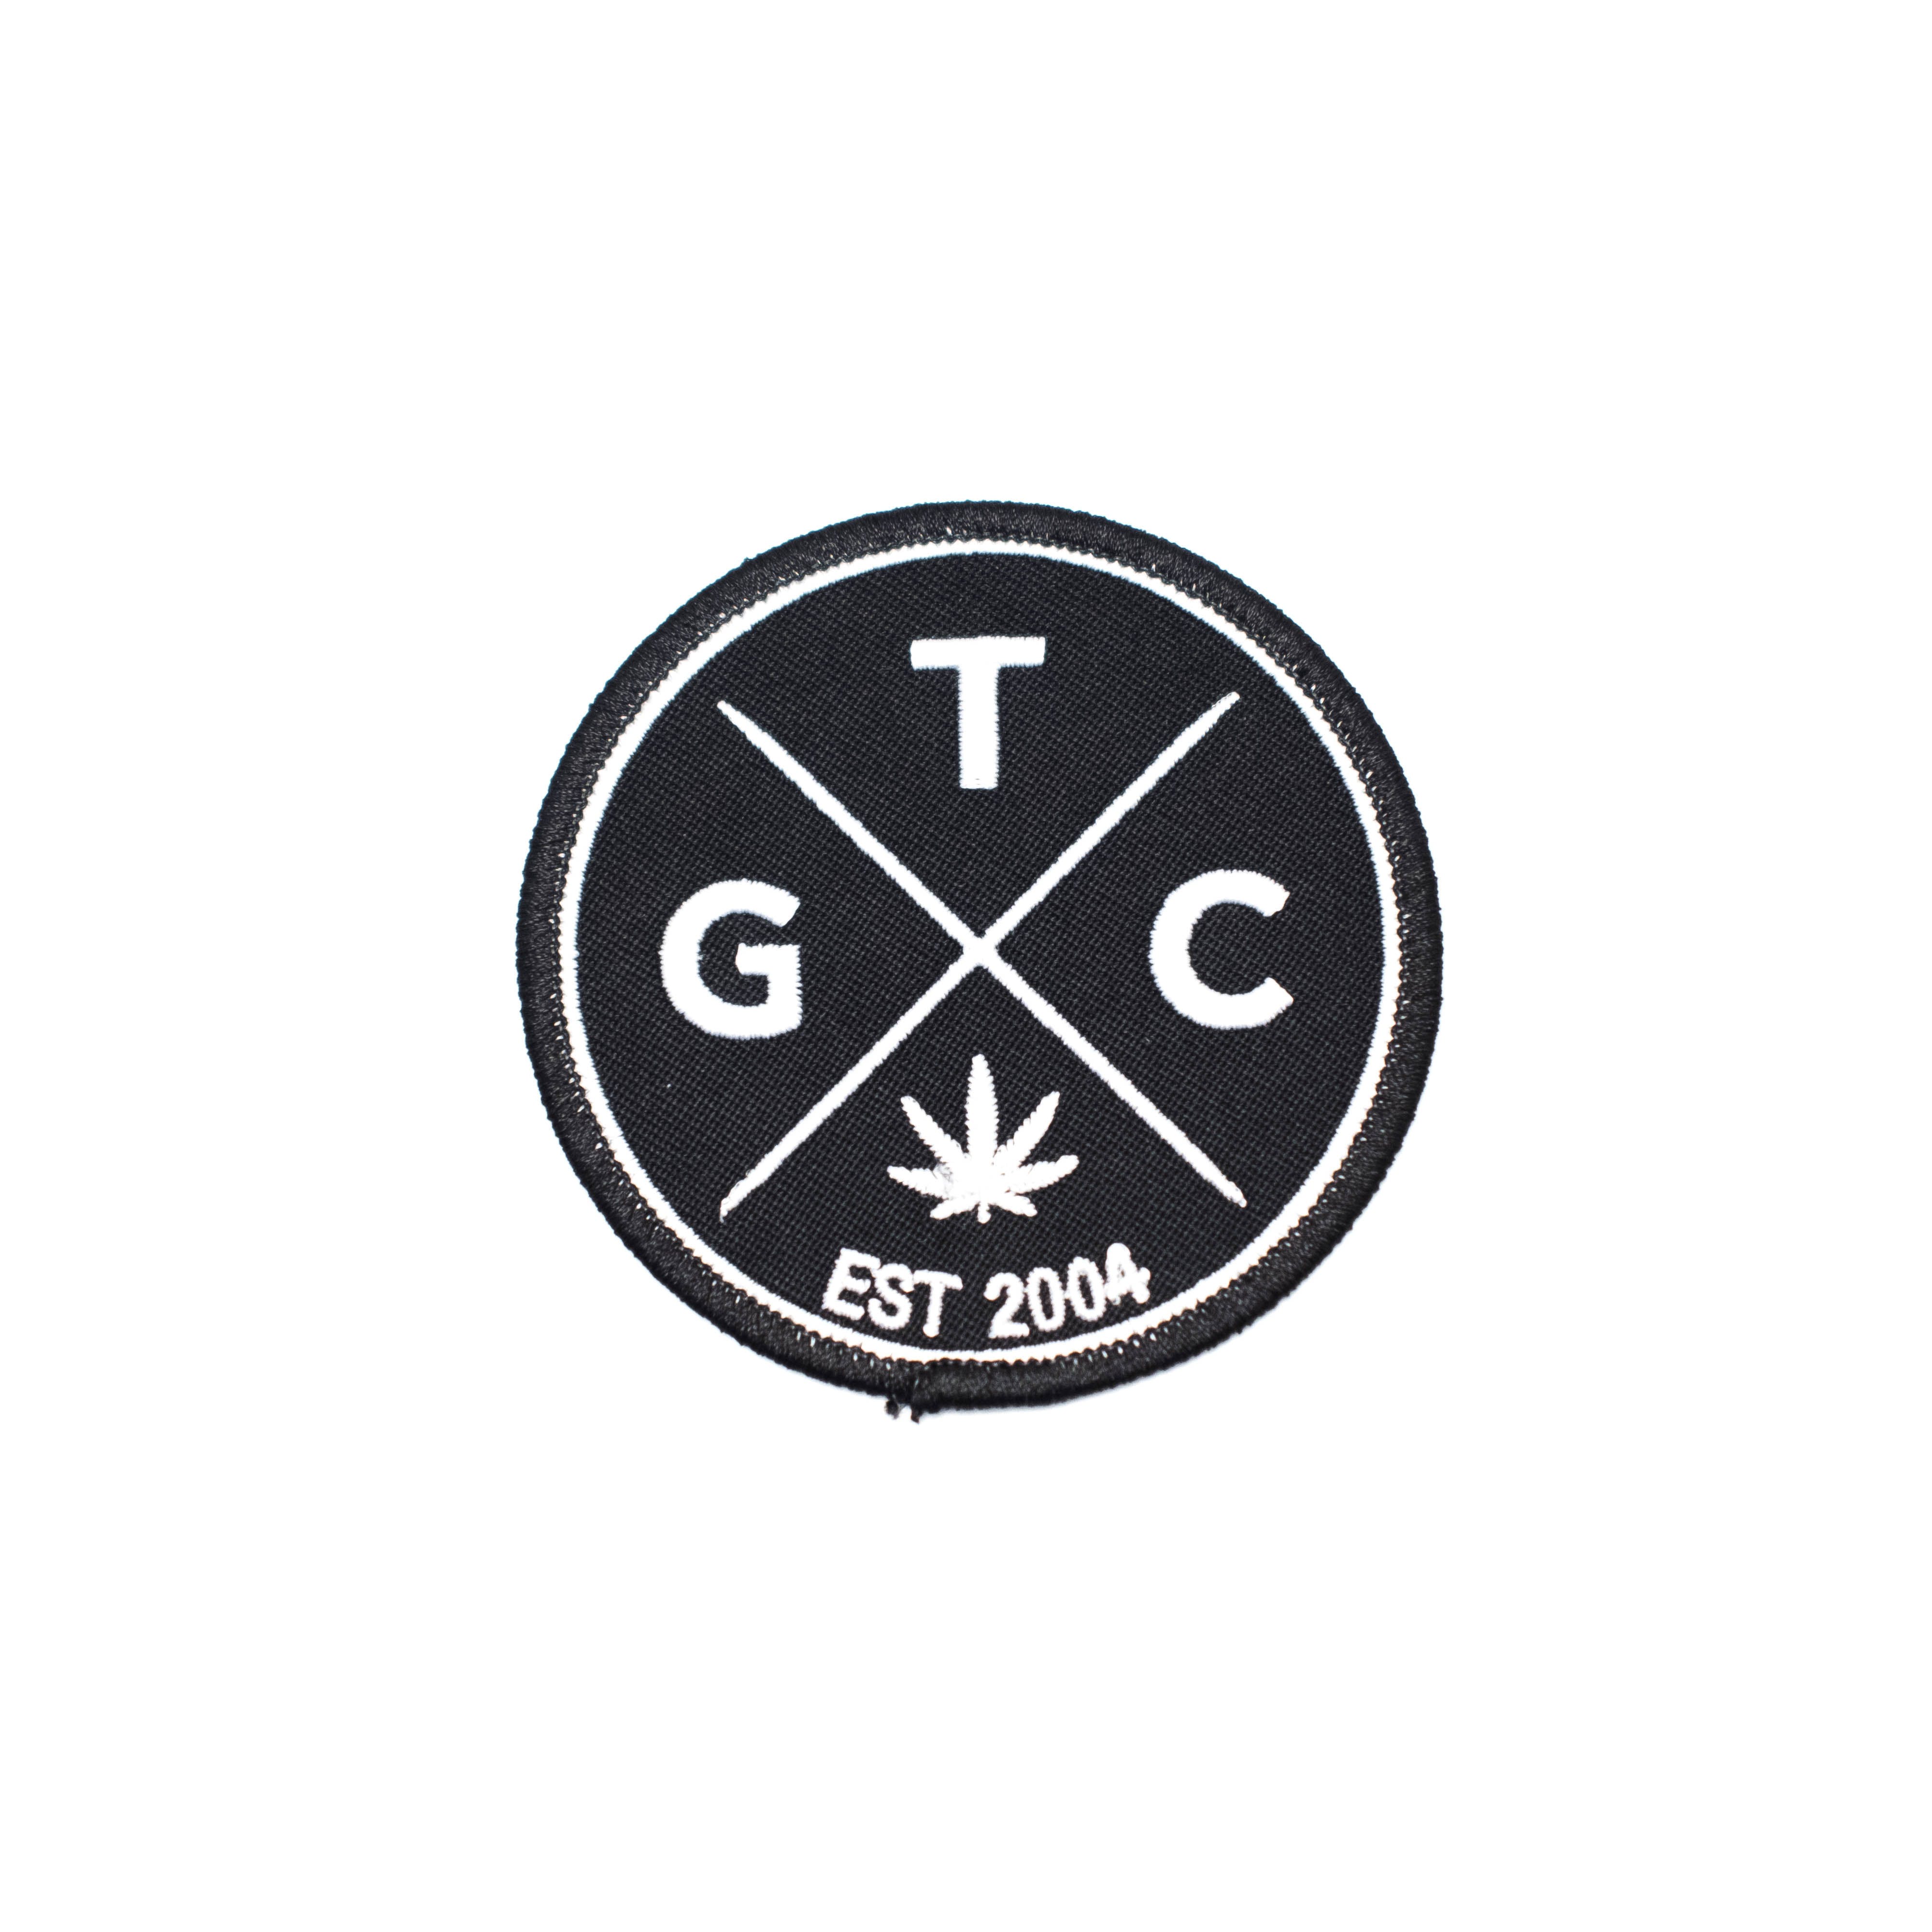 TGC Patch